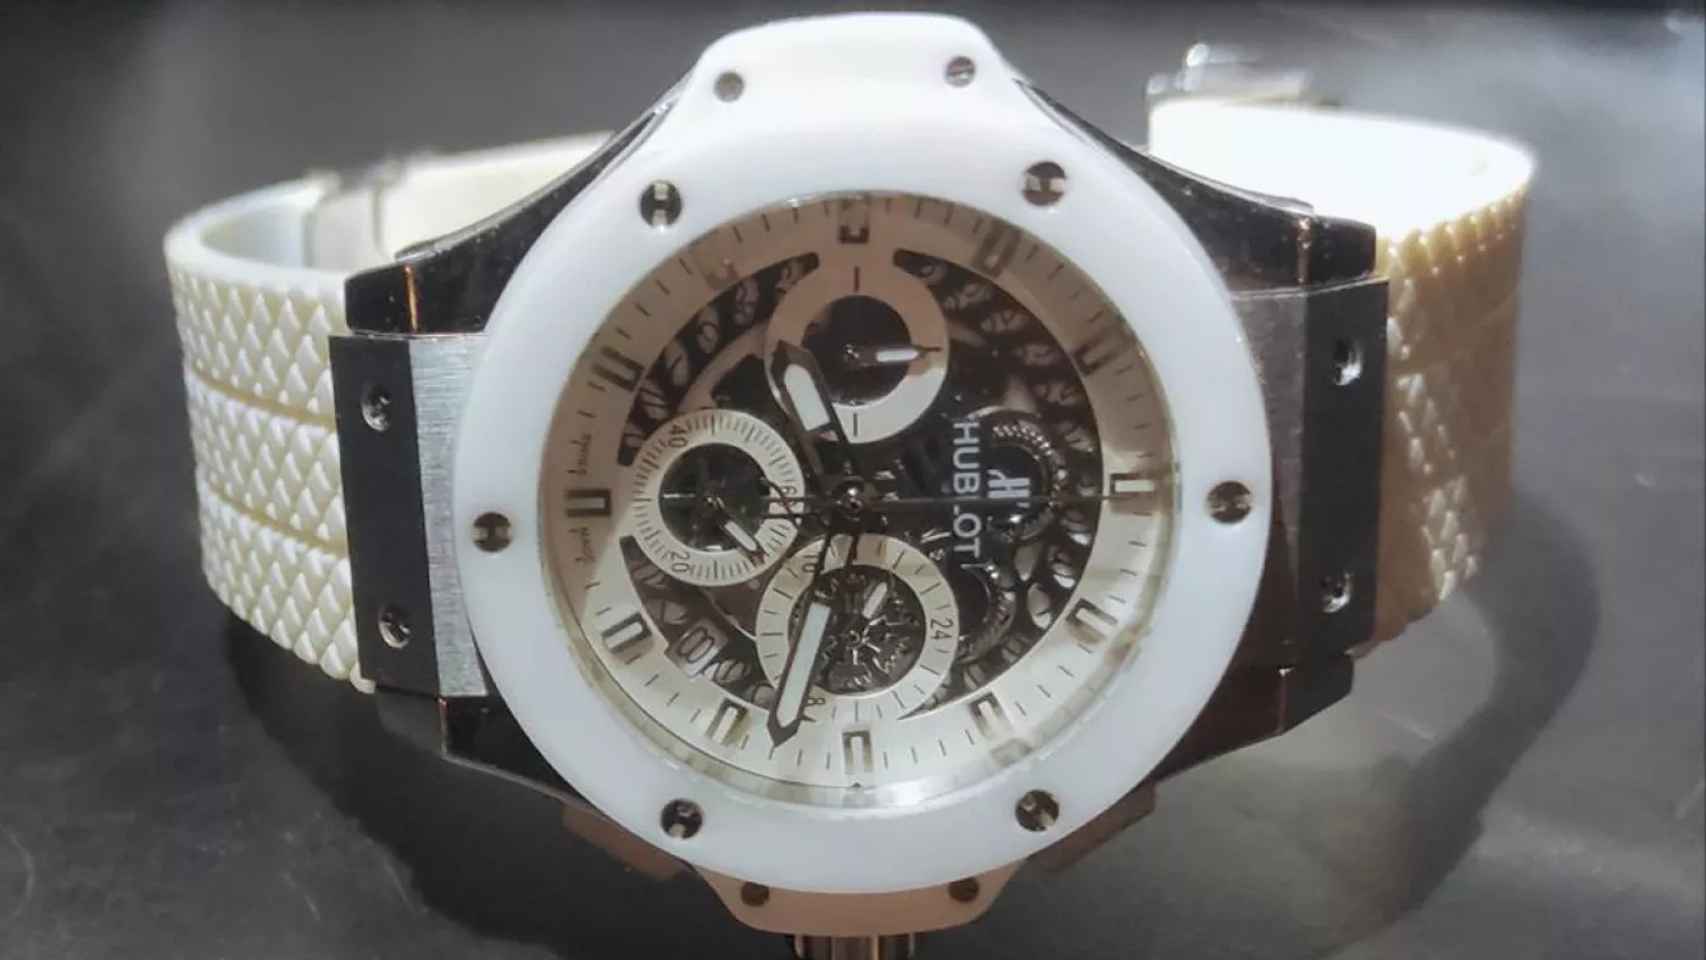 El reloj valorado en 15.000 euros / GUÀRDIA URBANA BARCELONA